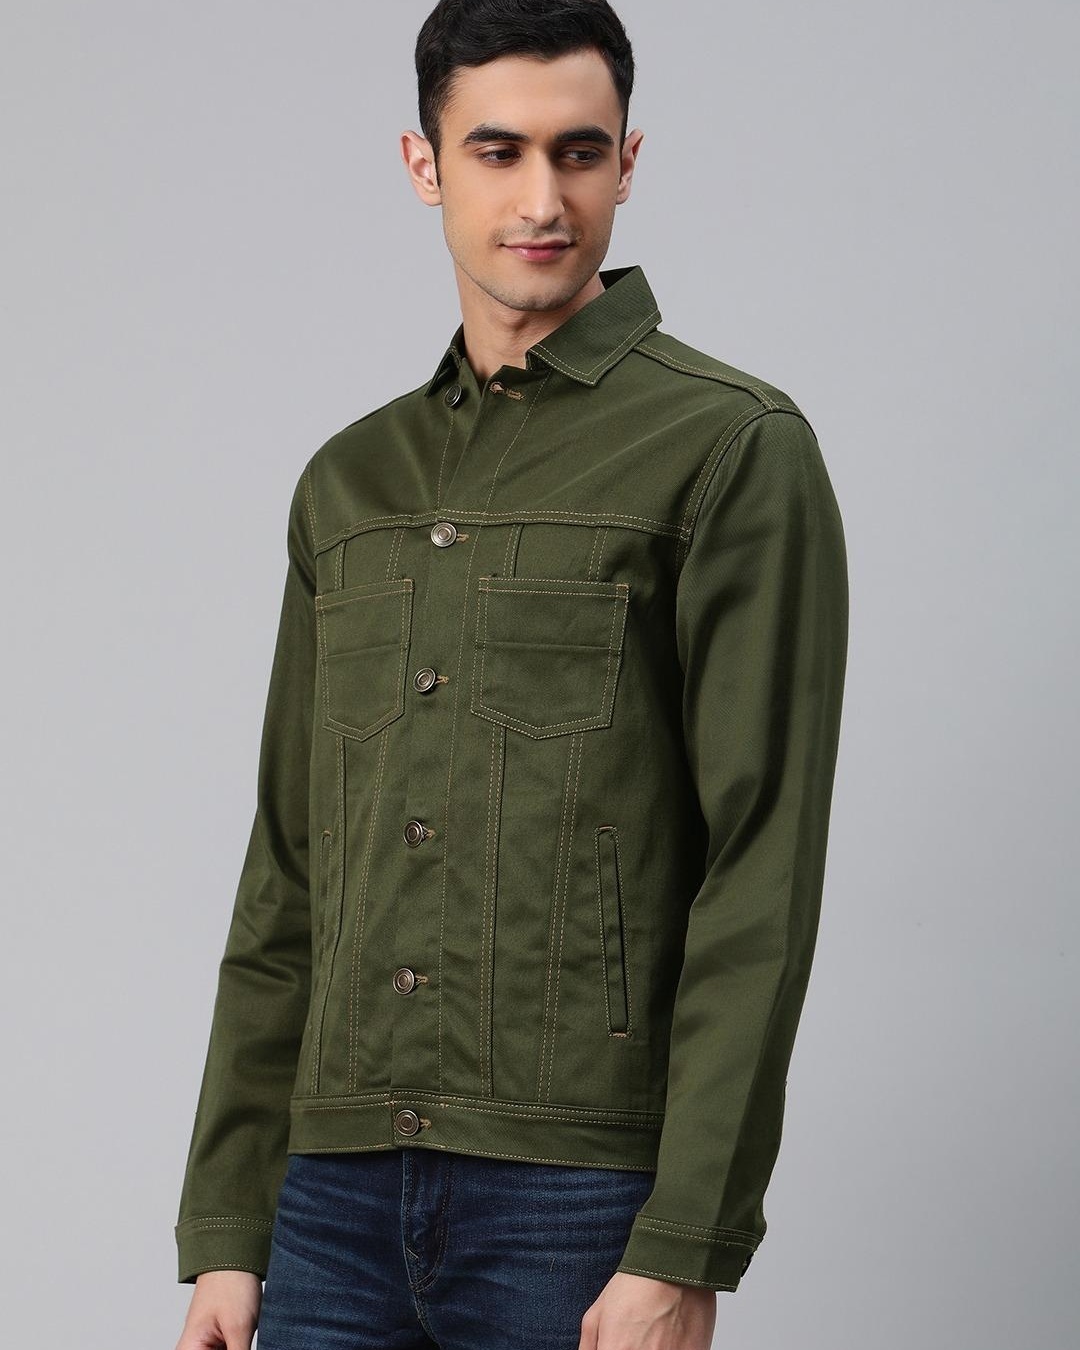 Buy Men's Green Denim Jacket Online at Bewakoof